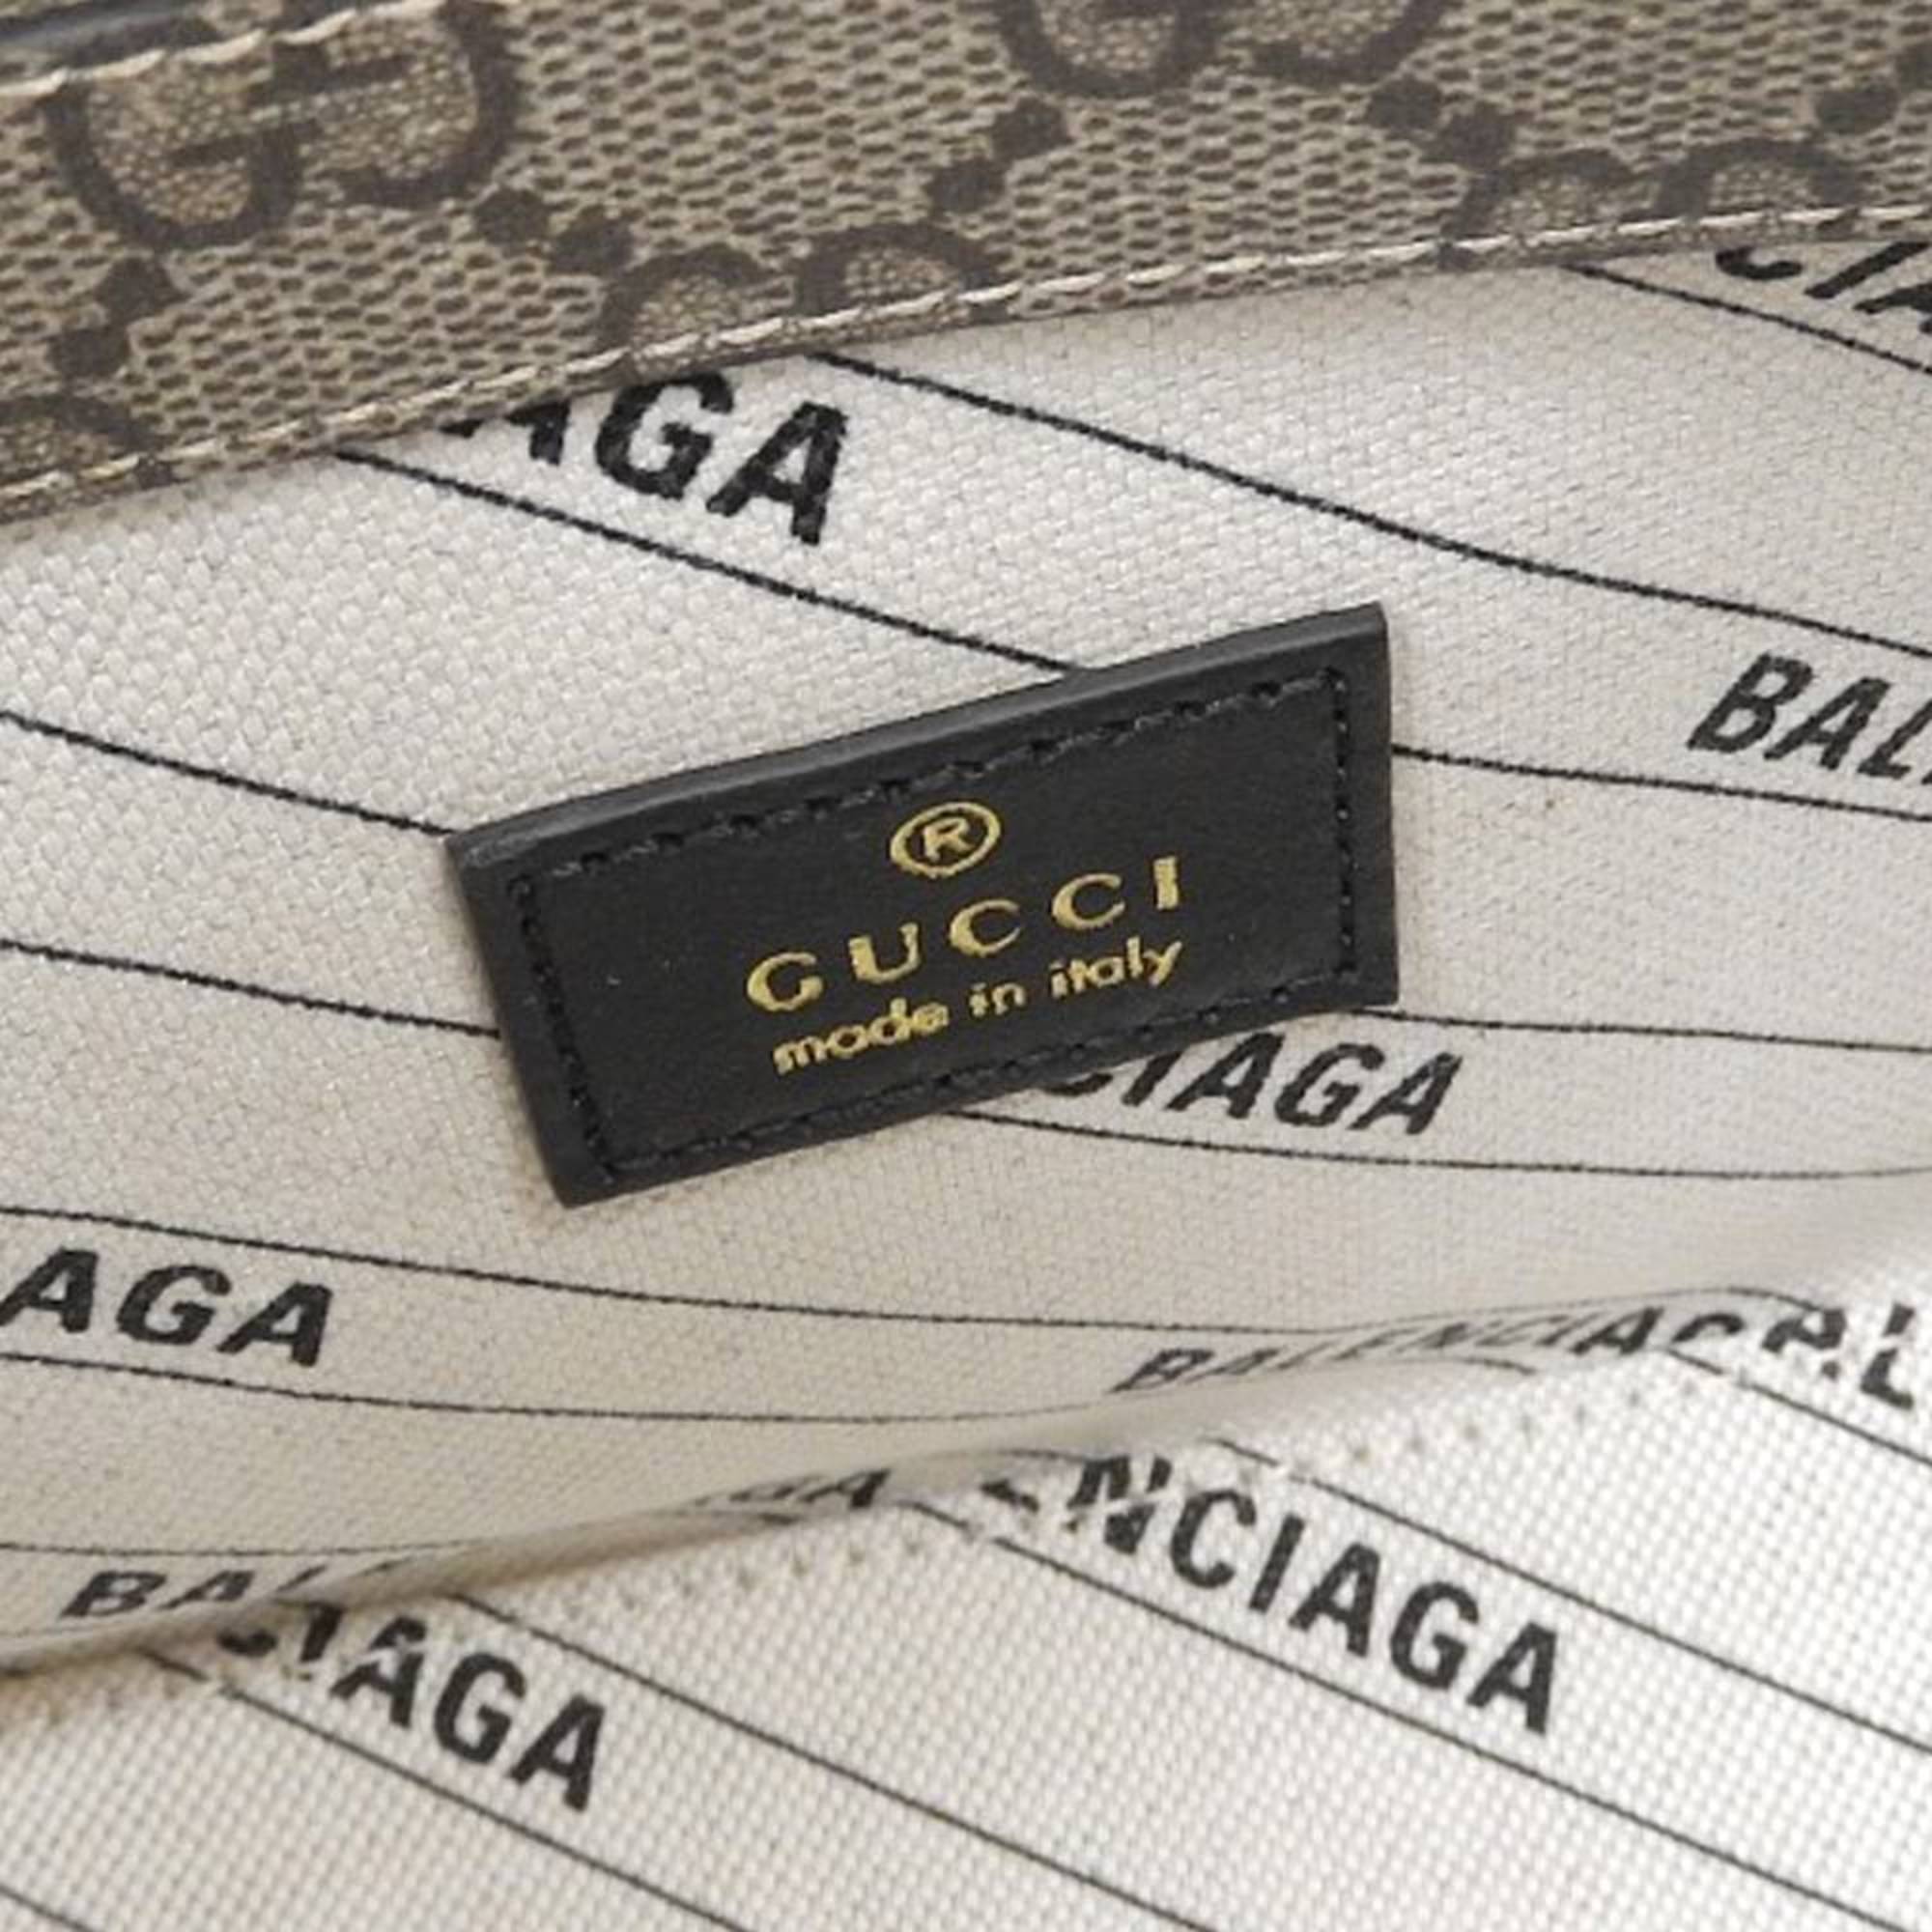 Gucci x Balenciaga The Hacker Project Ville Small Bag 2WAY 681699 520981 UQOAT